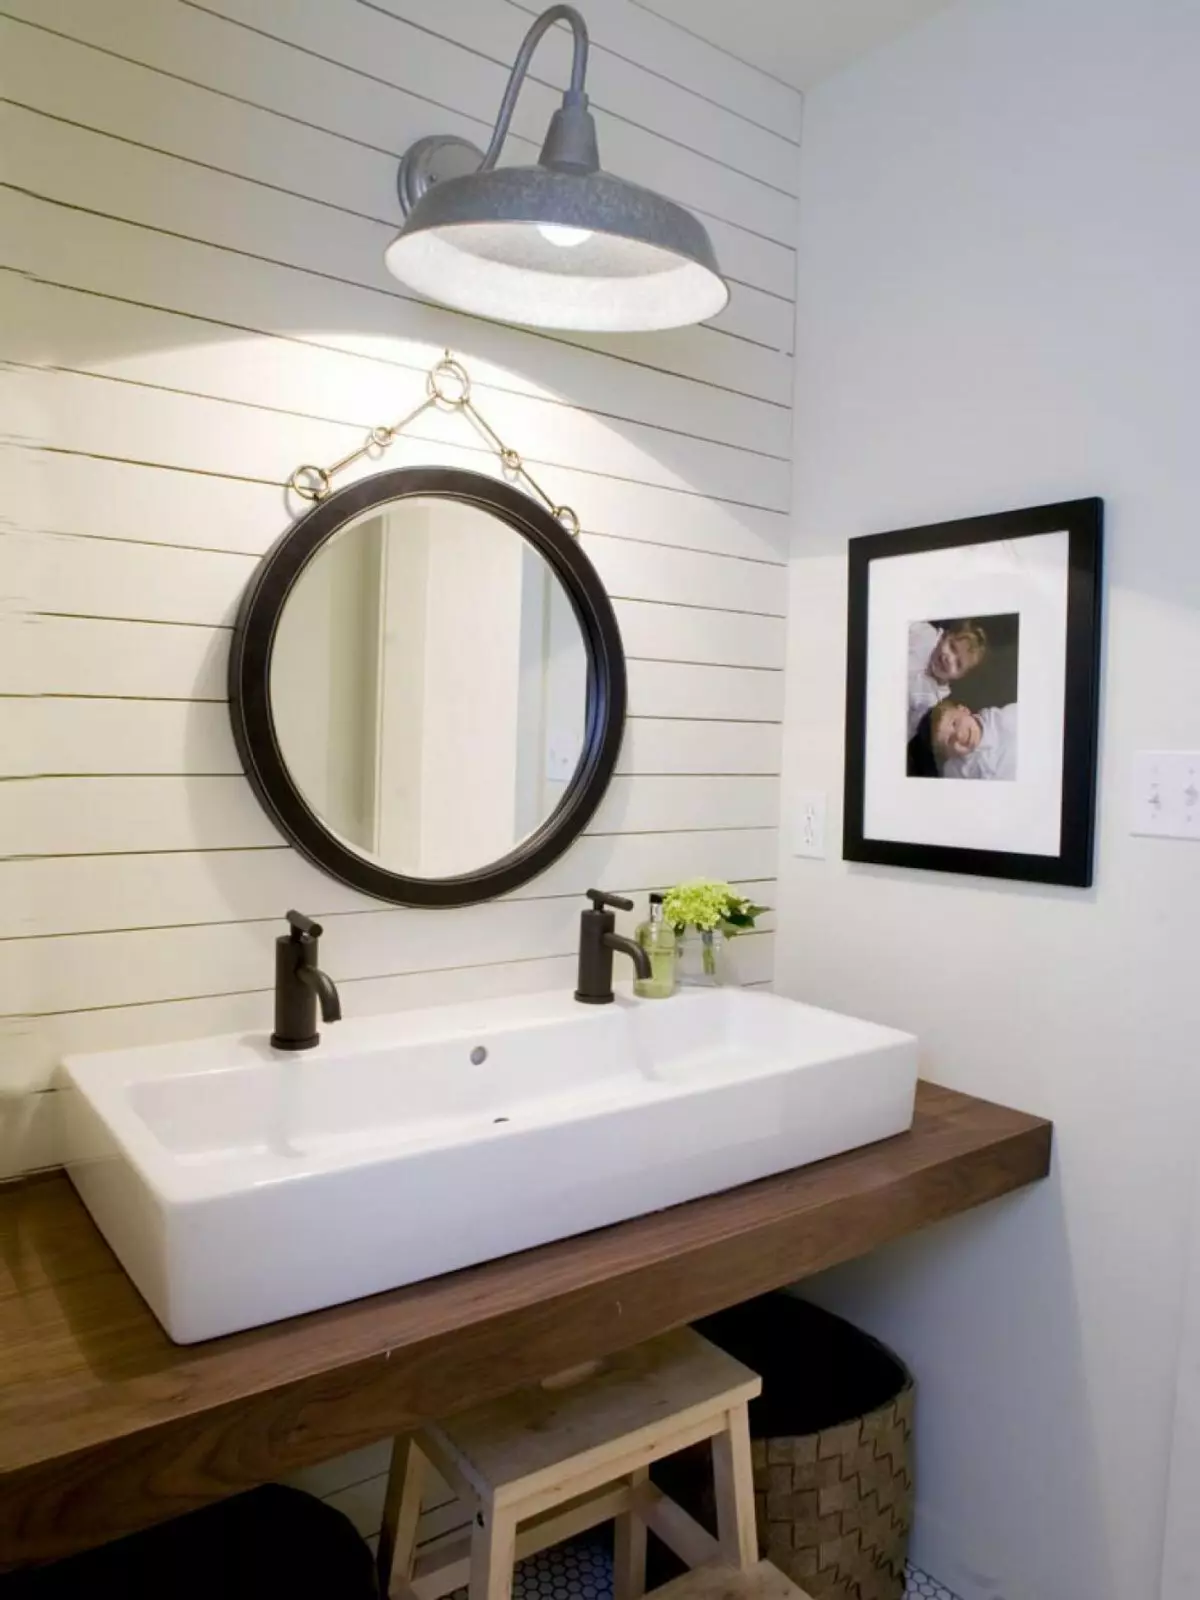 Miroir rond dans la salle de bain: miroirs design dans un cadre en bois, miroirs ronds de couleur noire et autre pour la salle de bain 10427_36